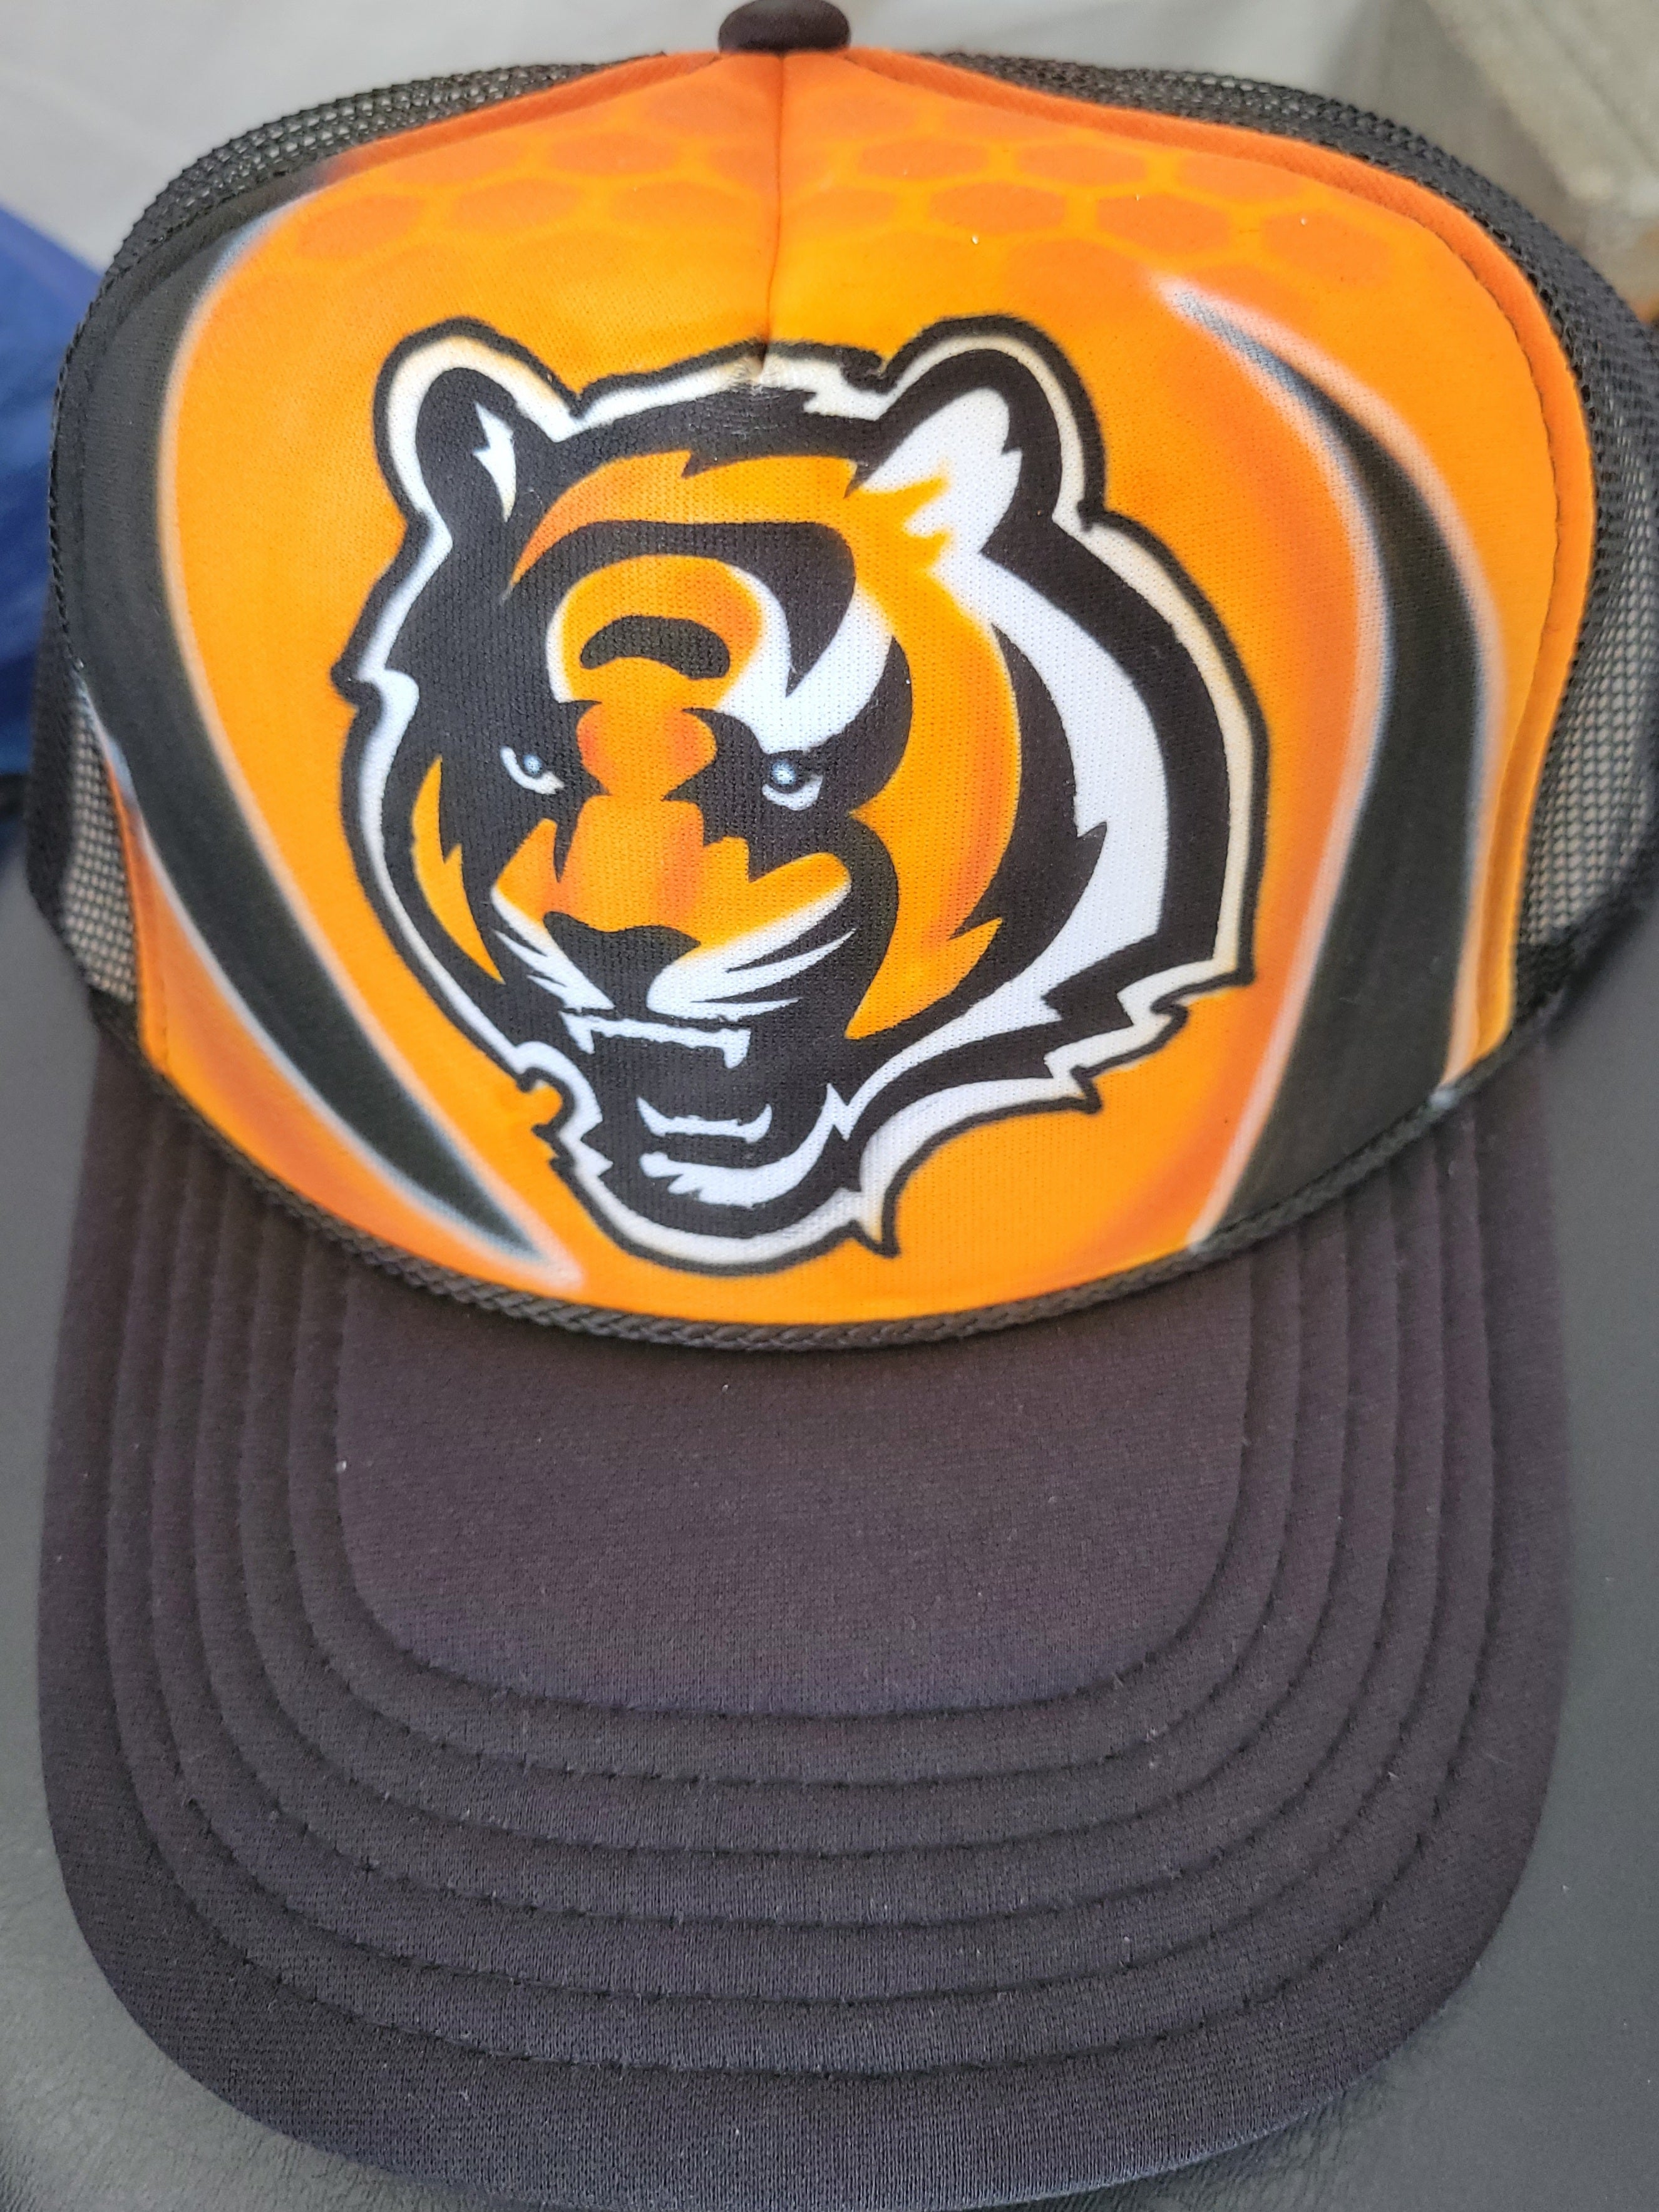 Bengals hat